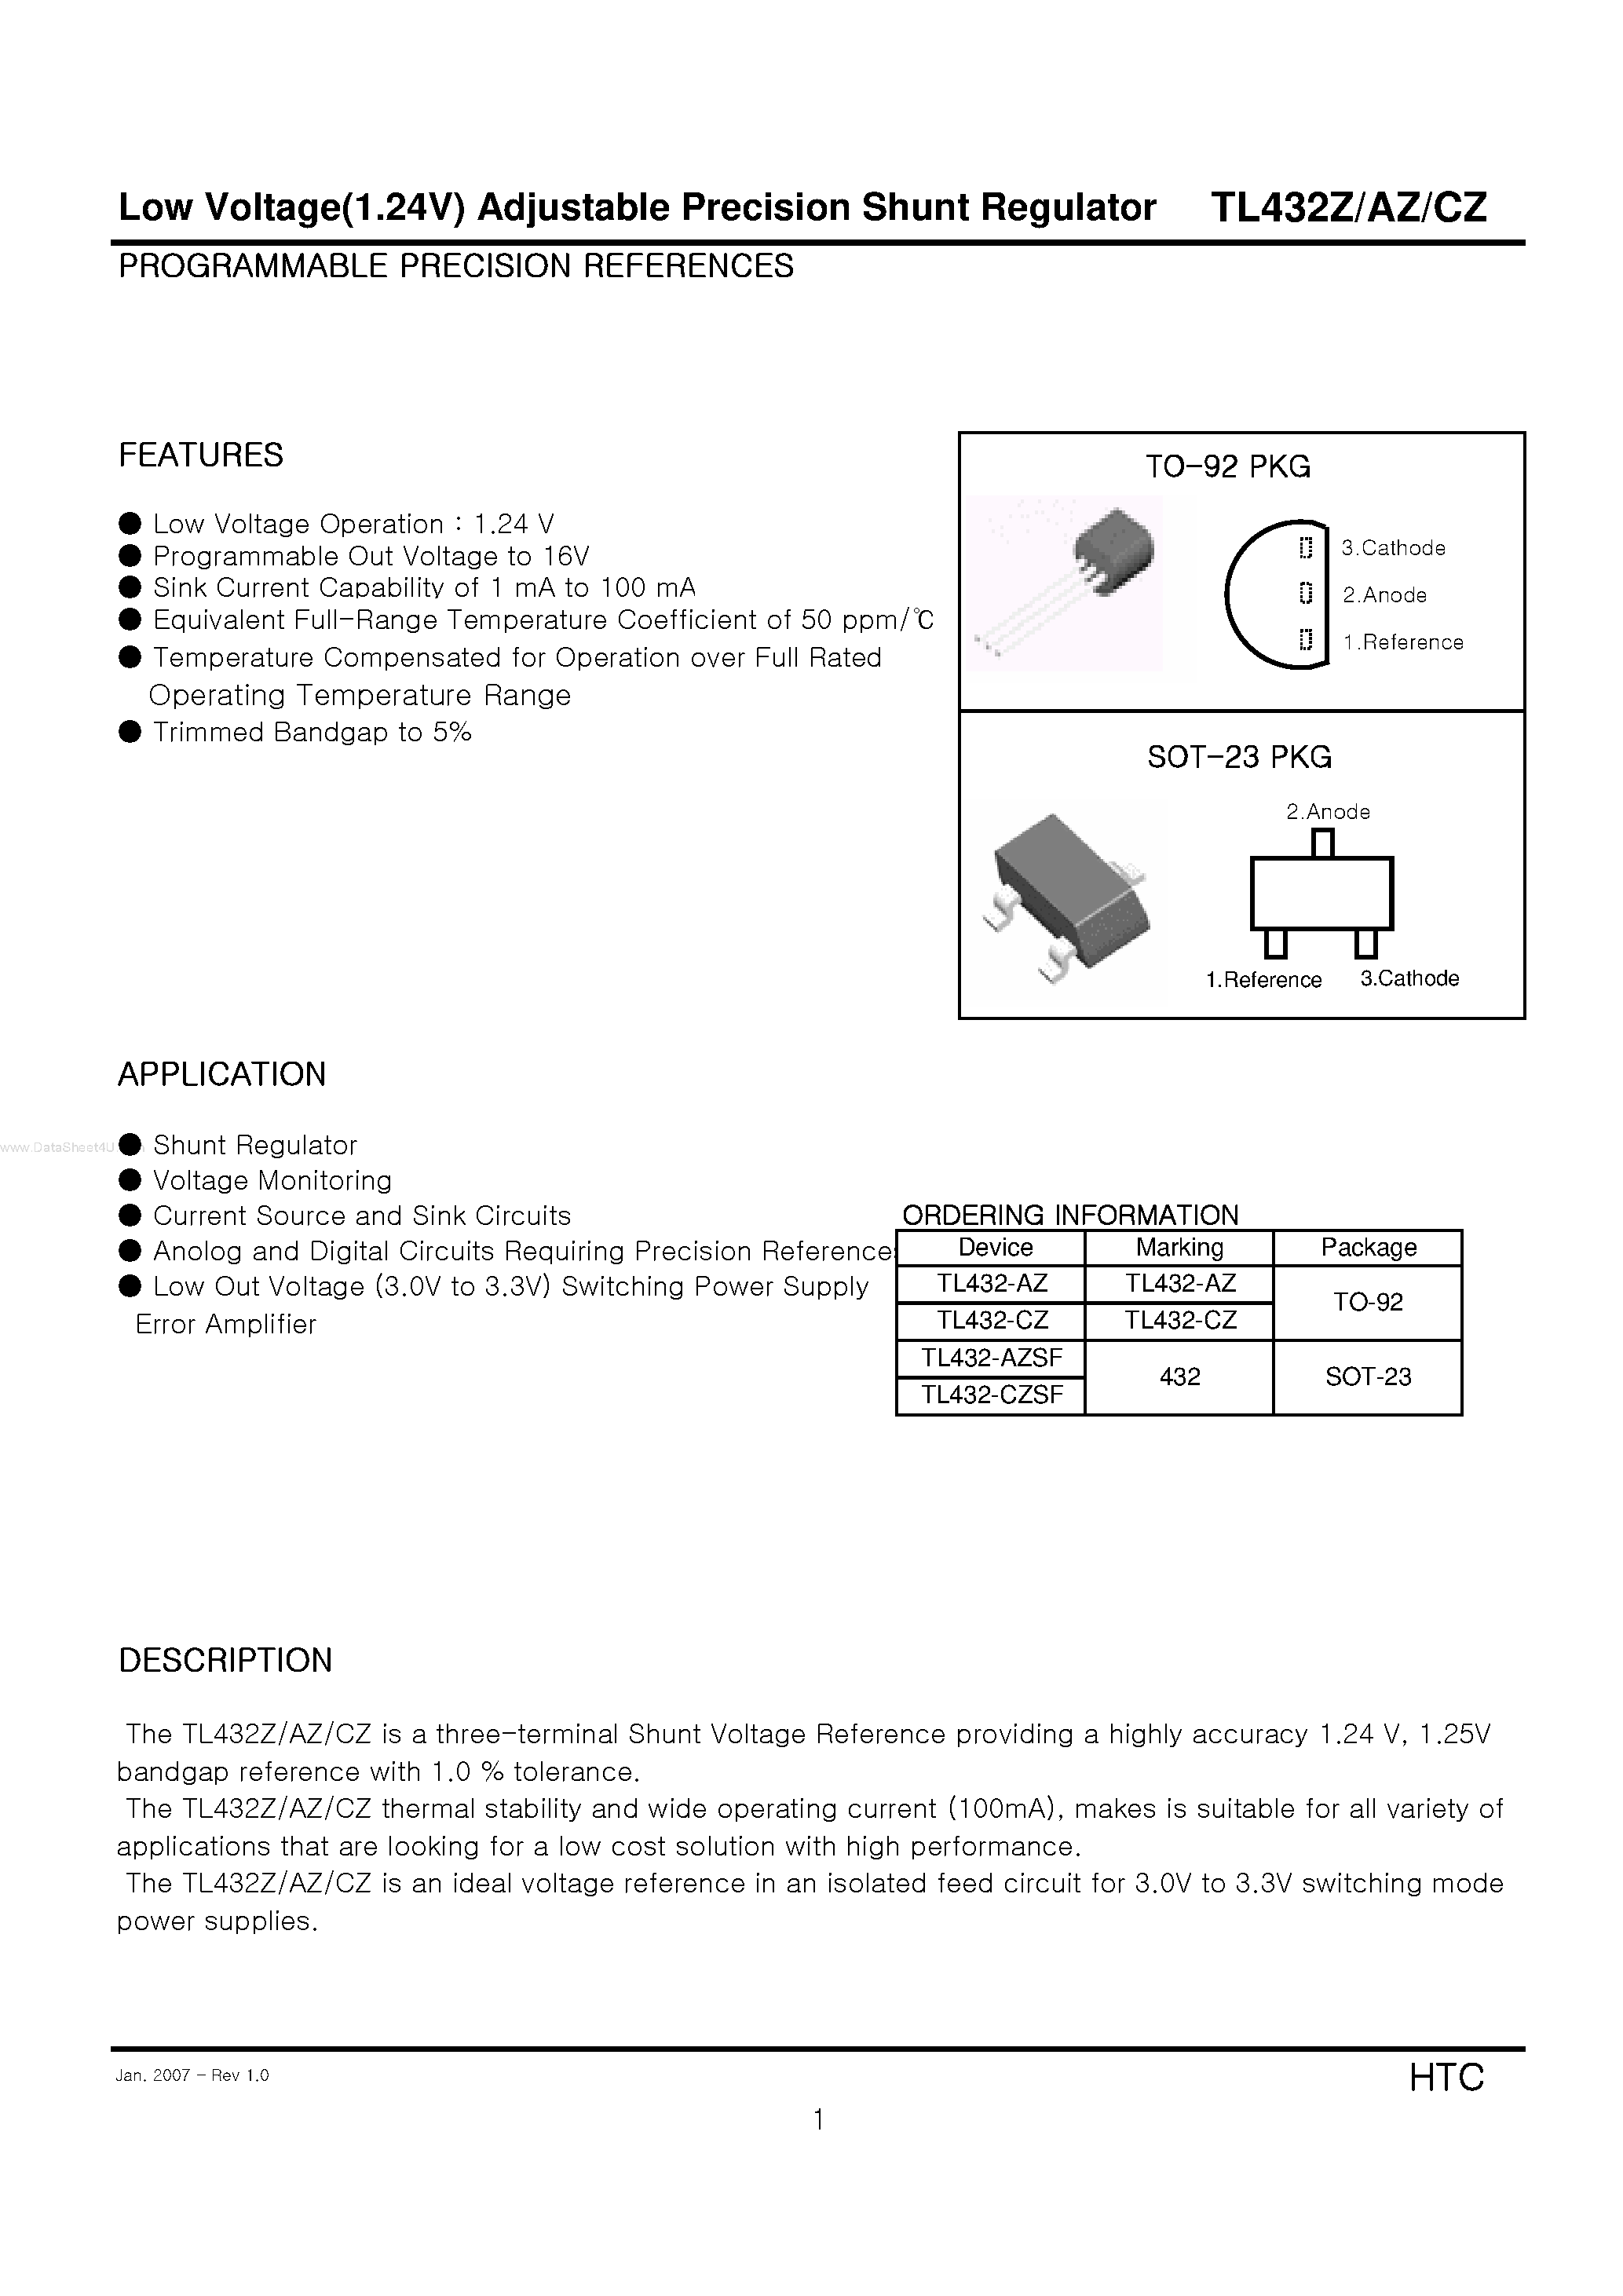 Datasheet TL432CZ - Low Voltage(1.24V) Adjustable Precision Shunt Regulator page 1